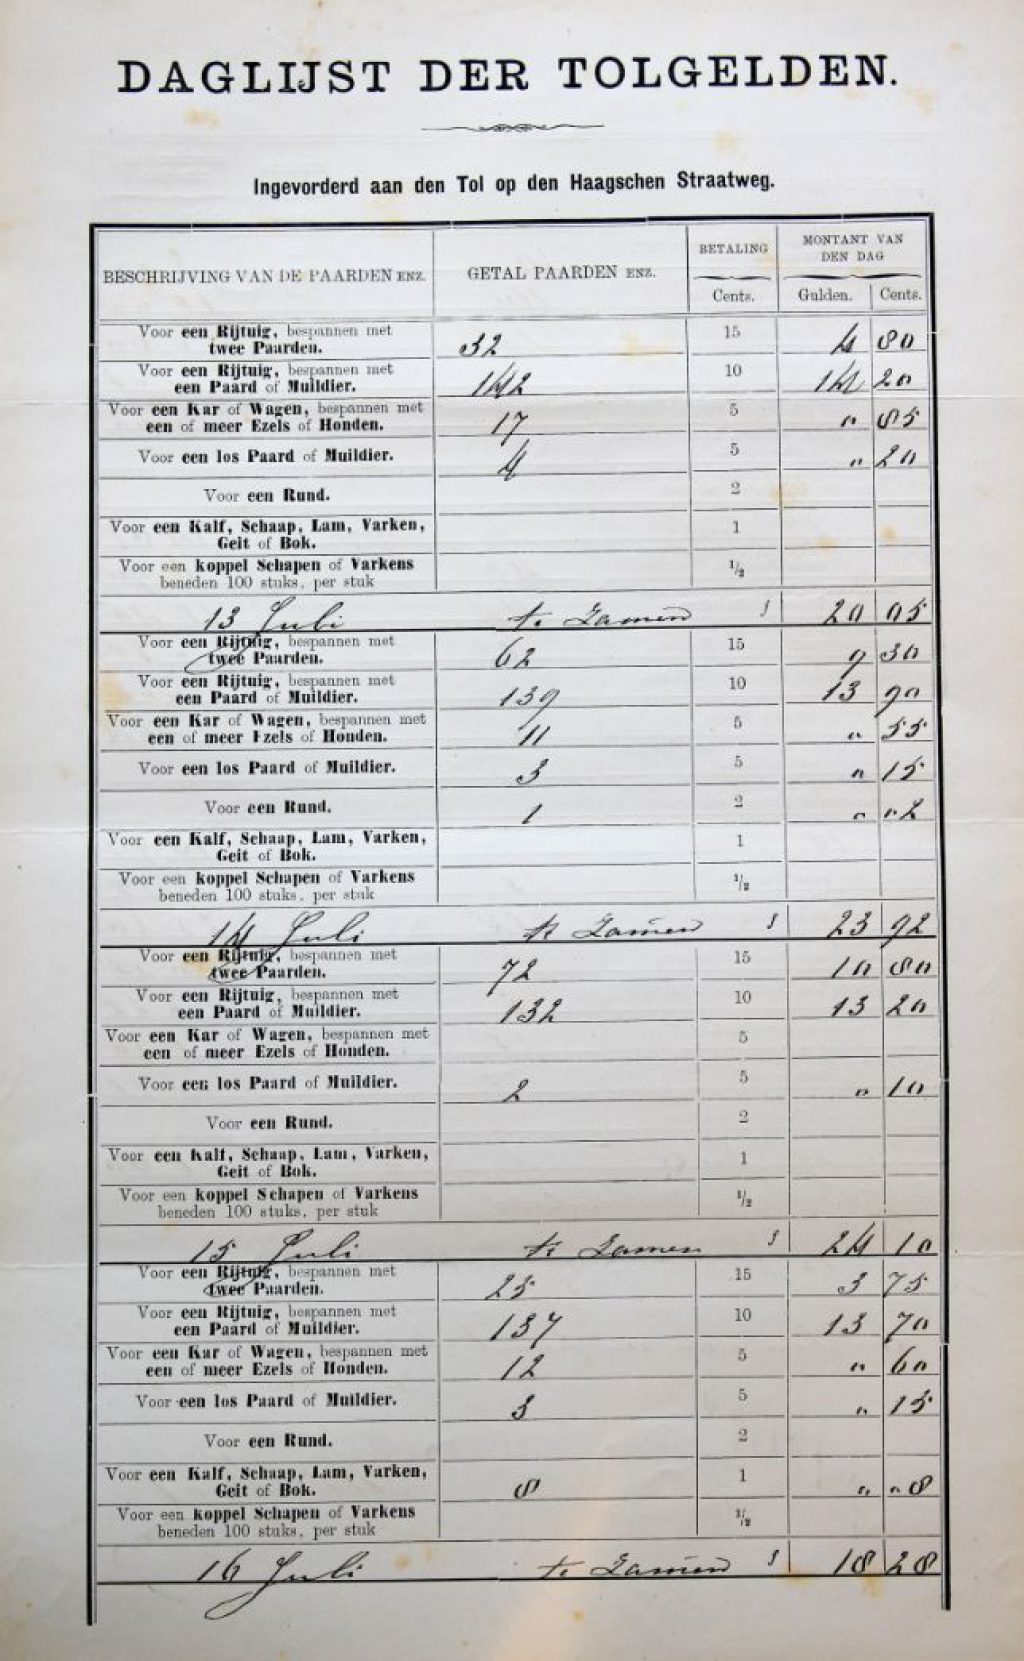 Daglijst van de tolgelden in het tolregister van de Haagweg, juli 1888 (Archief 2, inv.nr 5949)